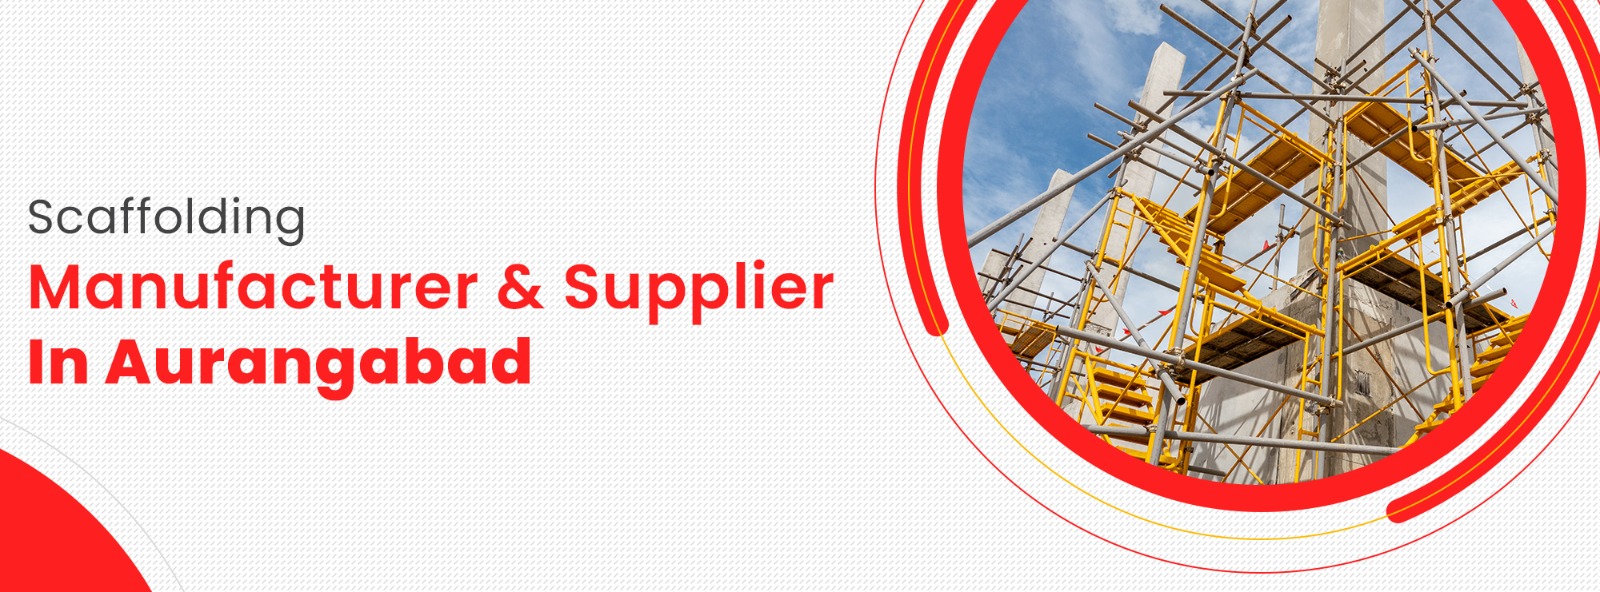 scaffolding Manufacturer & Supplier In aurangabad